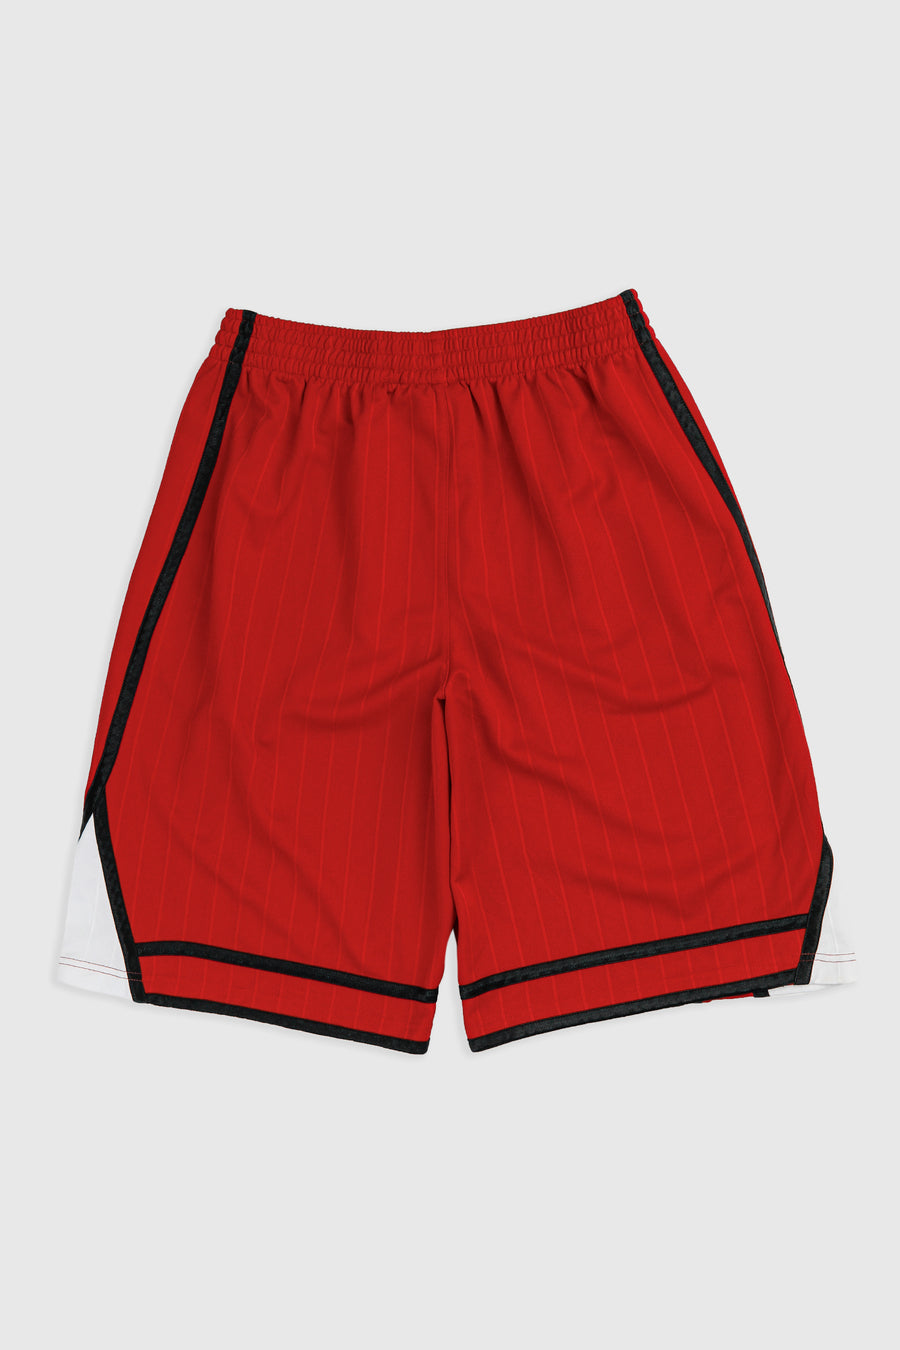 Vintage Starter Basketball Shorts - M